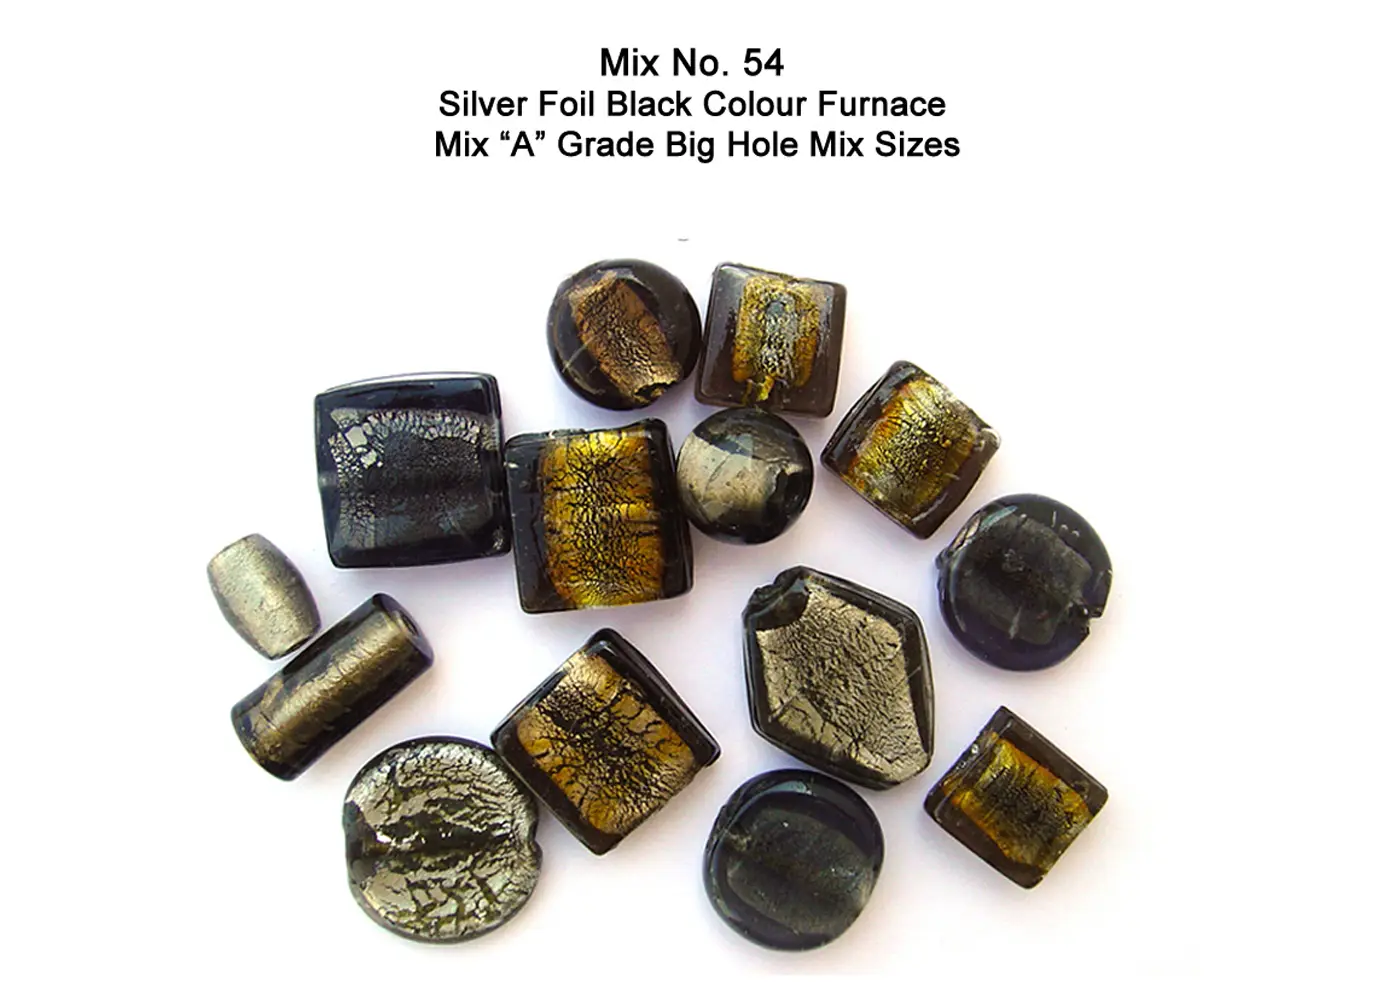 Silver Foil Black Color Furnace Mix "A" Grade Big Hole mix sizes